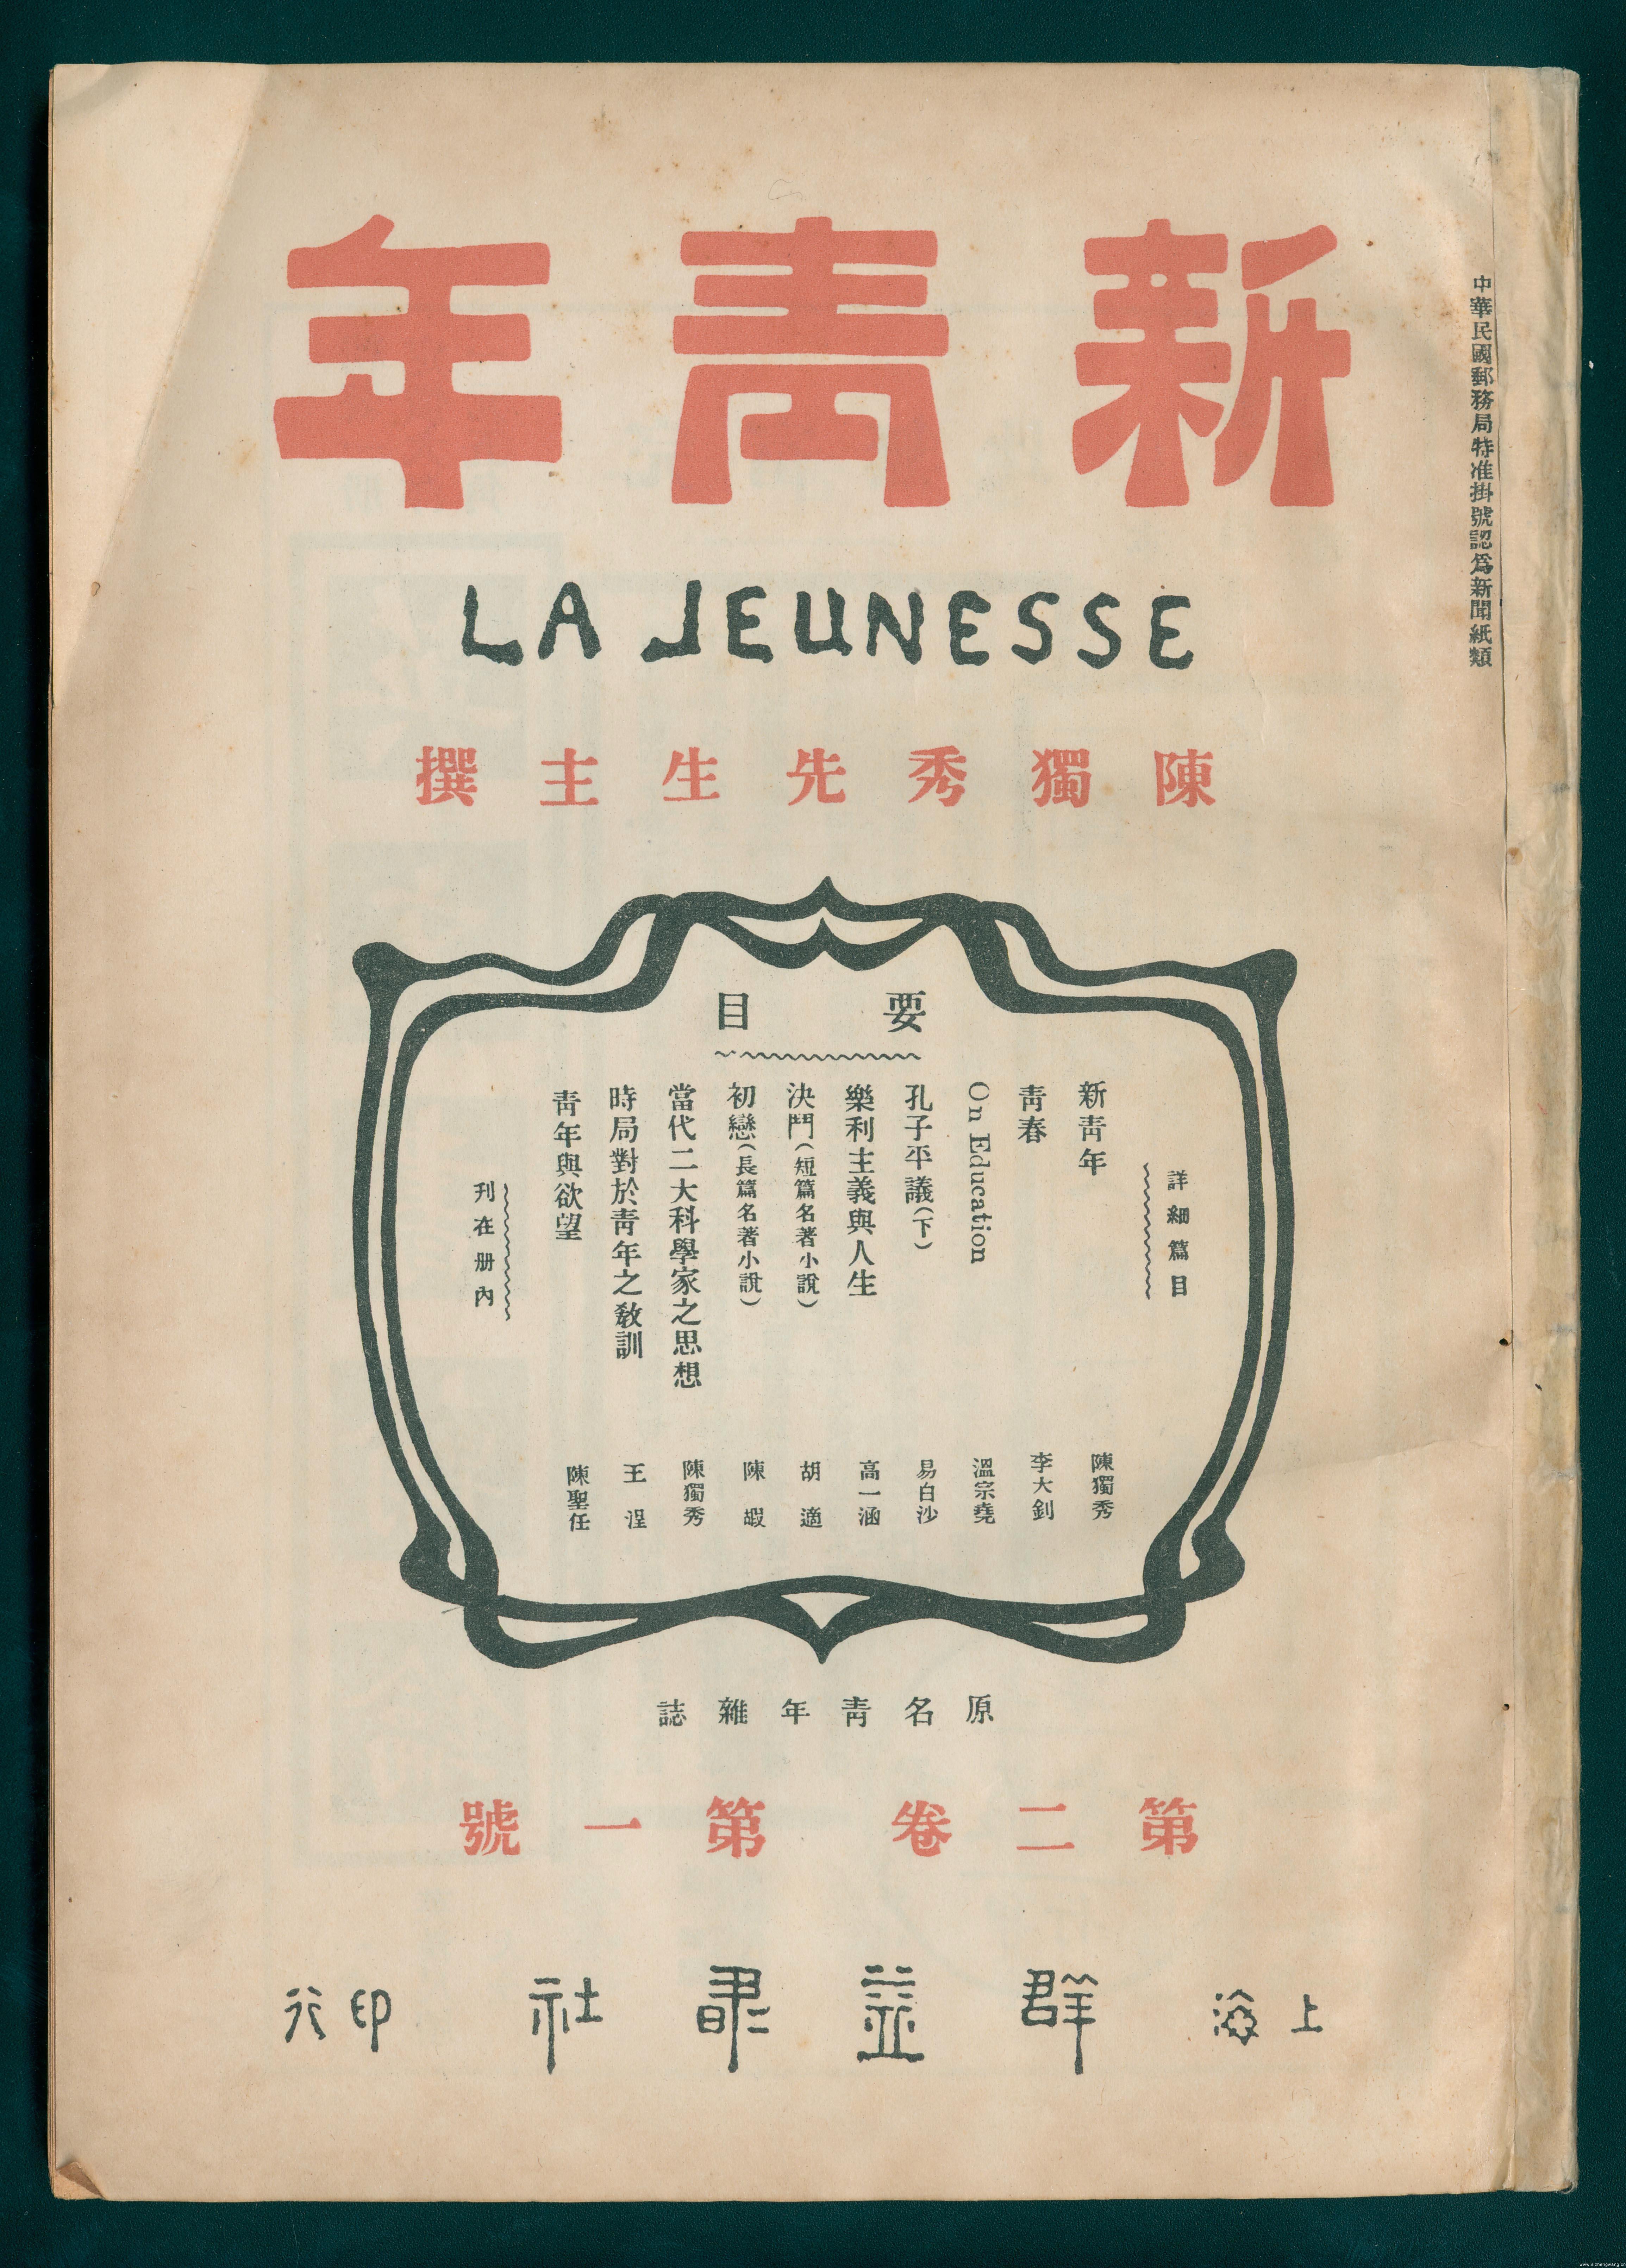 新文化运动的核心刊物,1915 年 9 月 15日陈独秀在上海创办